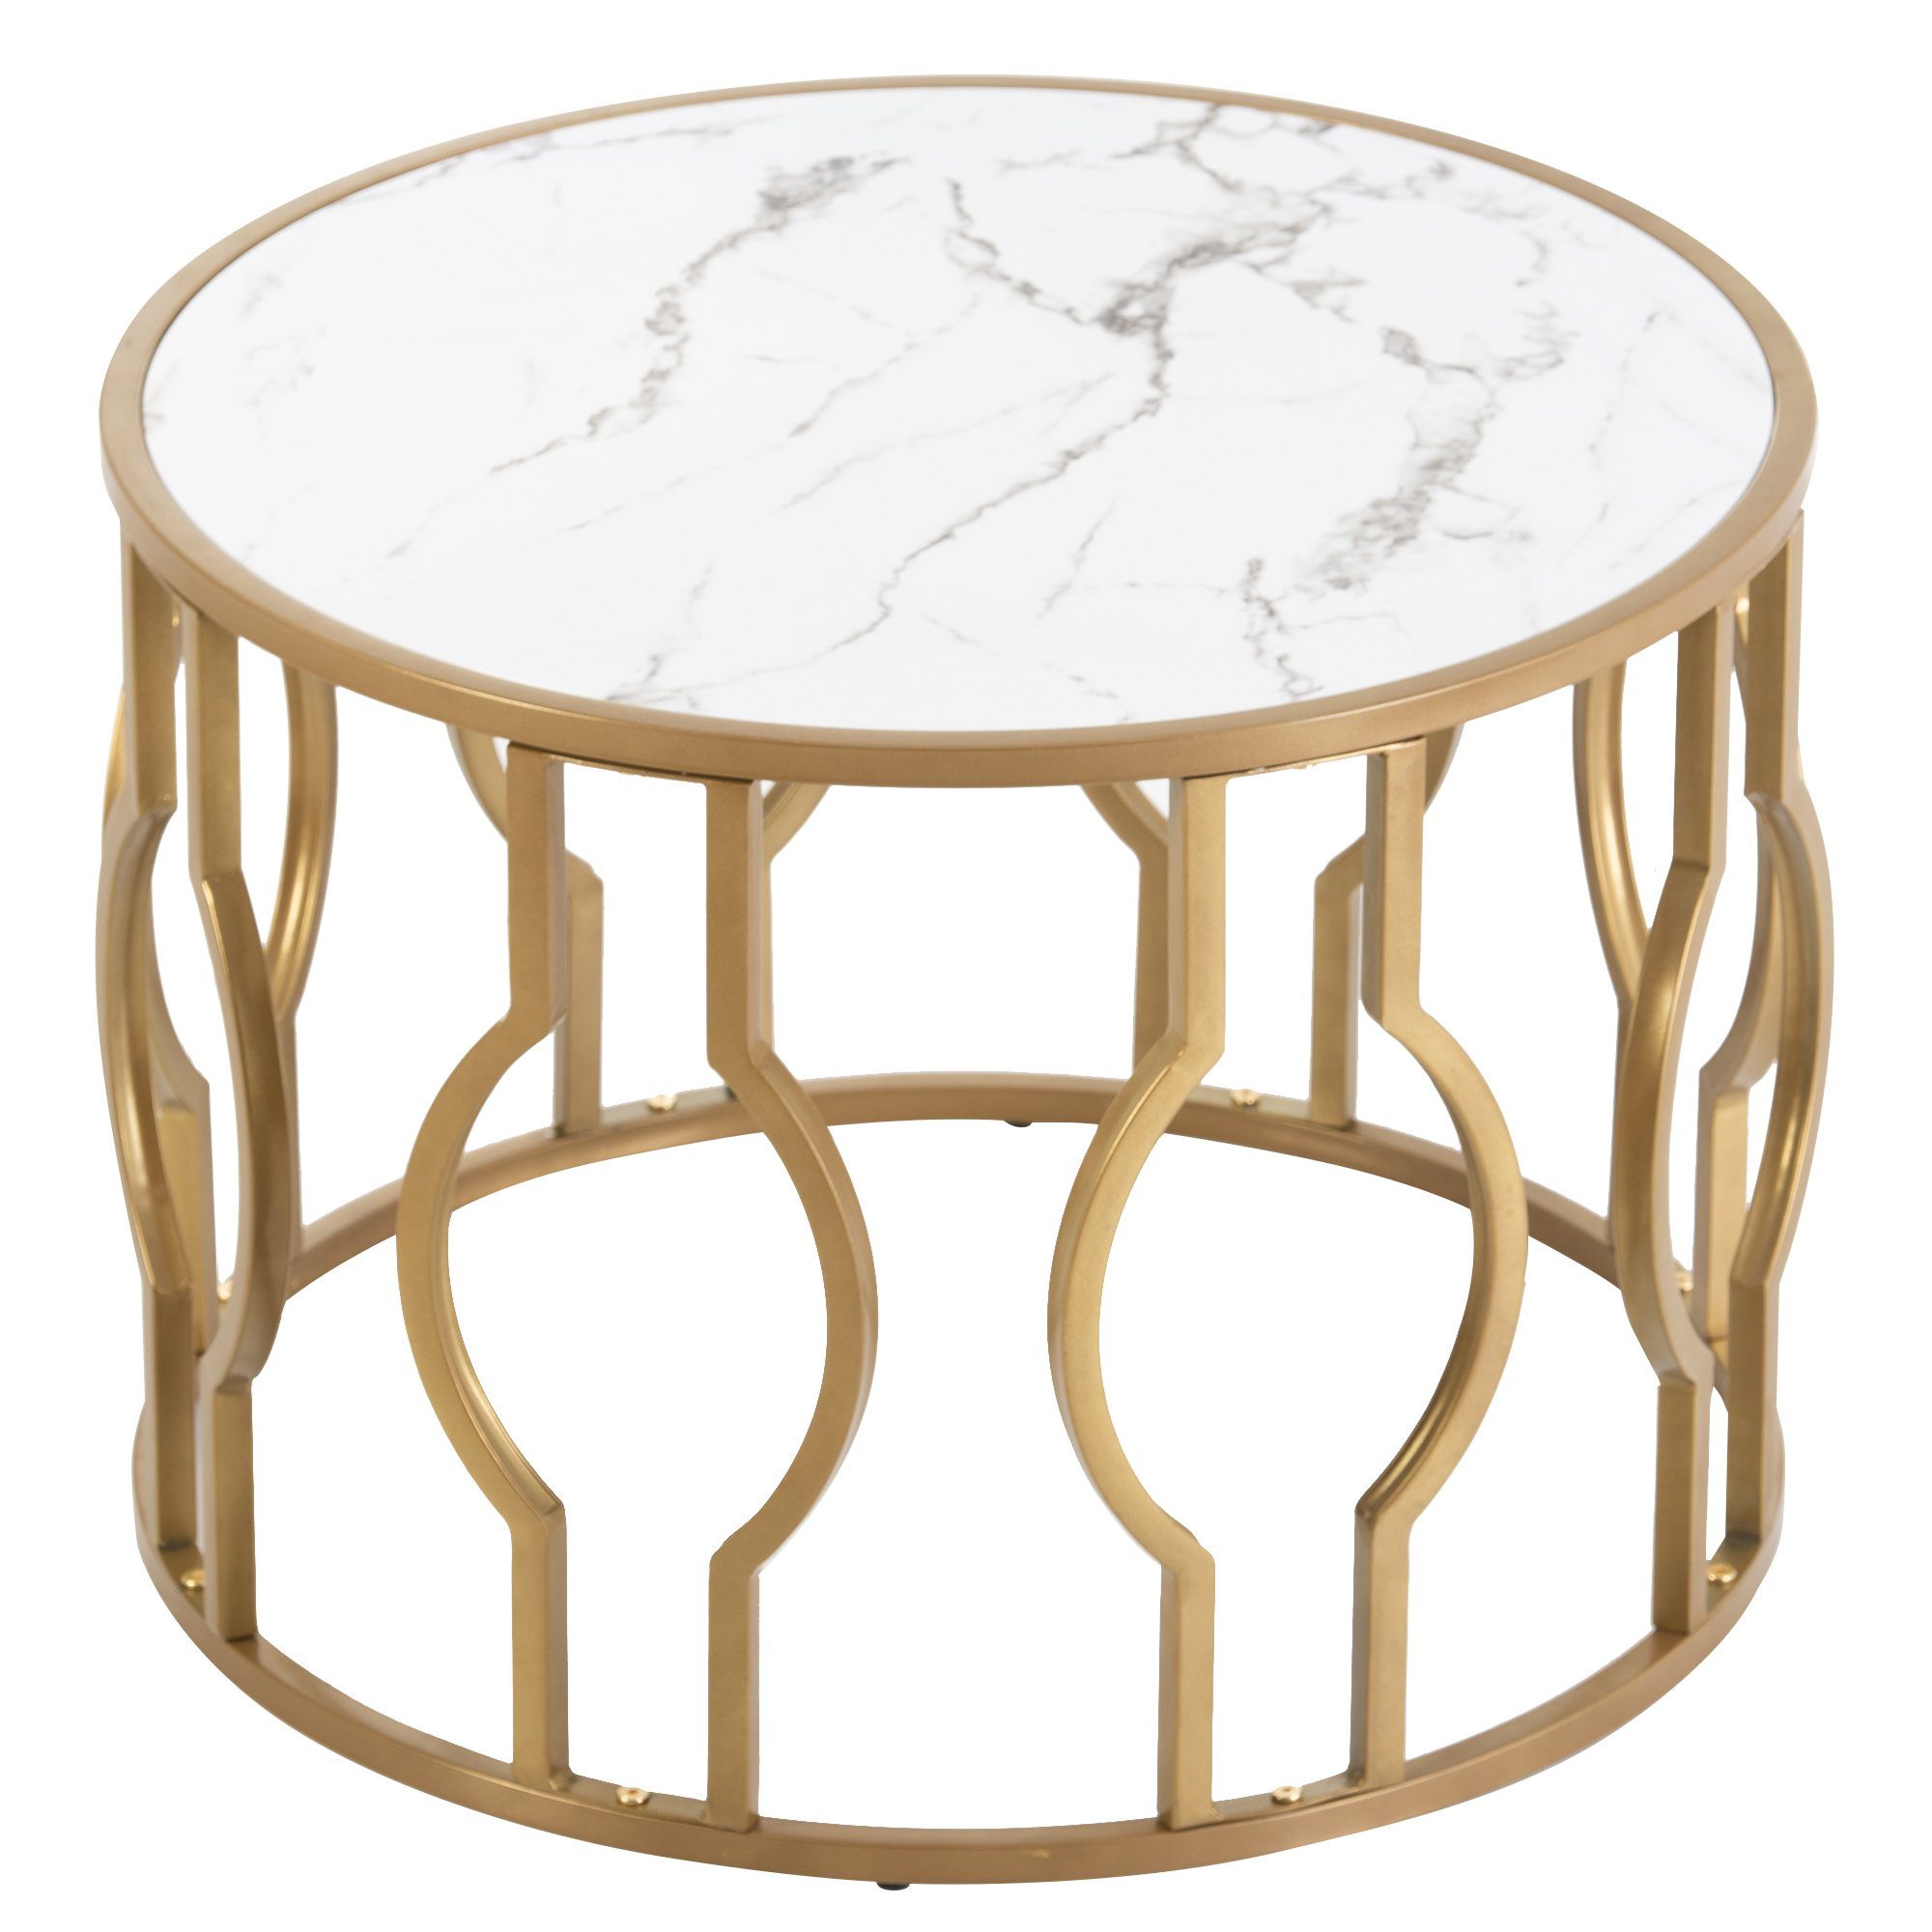 Ulife Couchtisch Runder Beistelltisch mit goldenen Metallbeine (Packung, 1 Tisch), Tischplatt mit Marmormuster, Beine mit geschwungenem Design